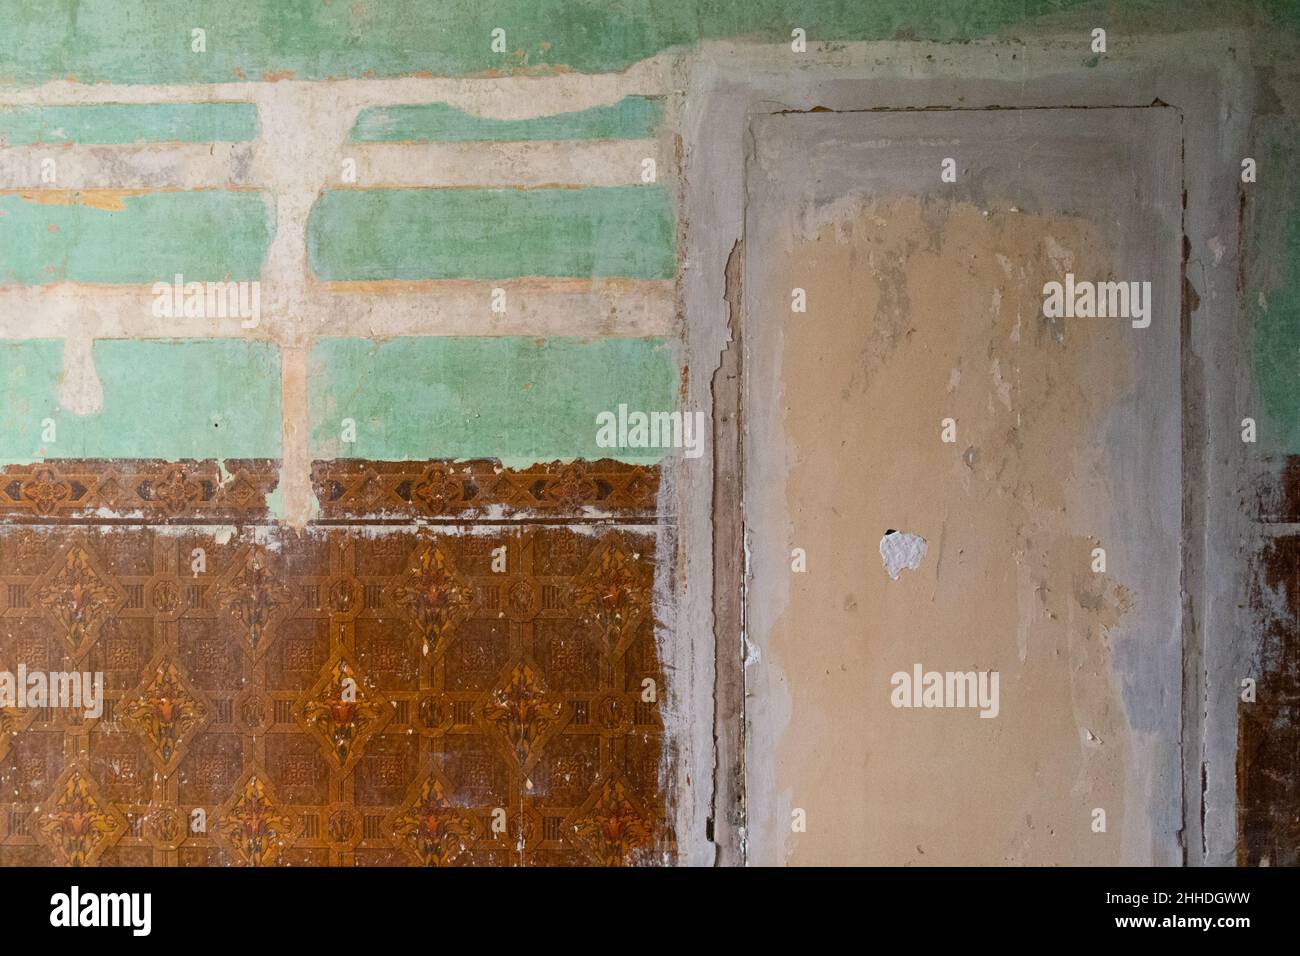 Home dekorieren - Dekorieren altes Haus - Tapete entfernt, um vintage braune Tapete und alte bemalte Wände zu offenbaren und vertaufte Tür - UK Stockfoto